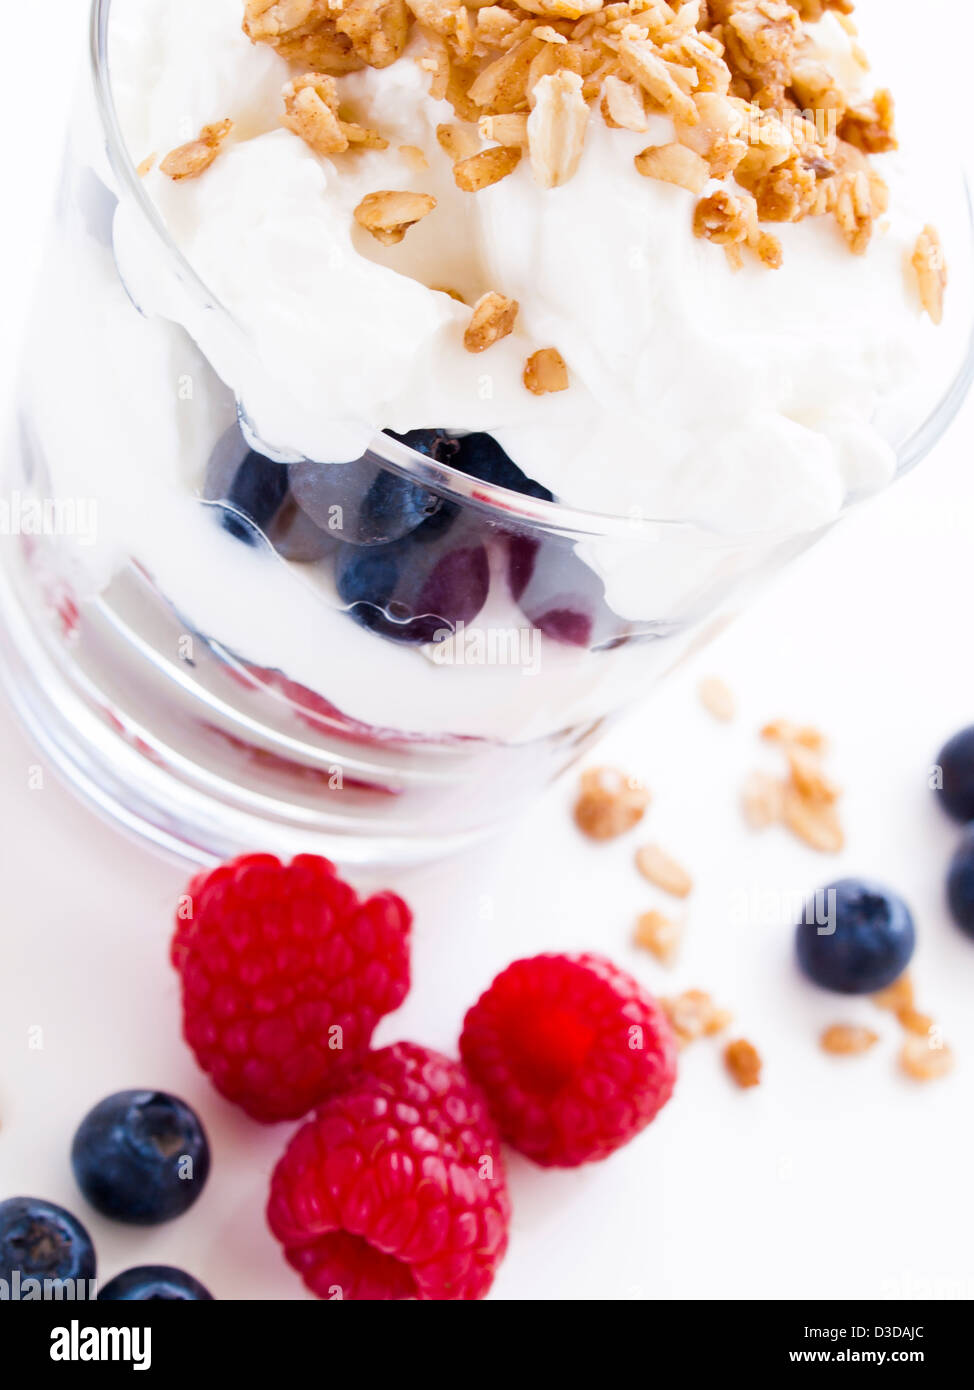 Leckeres Obst, Joghurt und Müsli Parfaits auf weißem Hintergrund Stockfoto